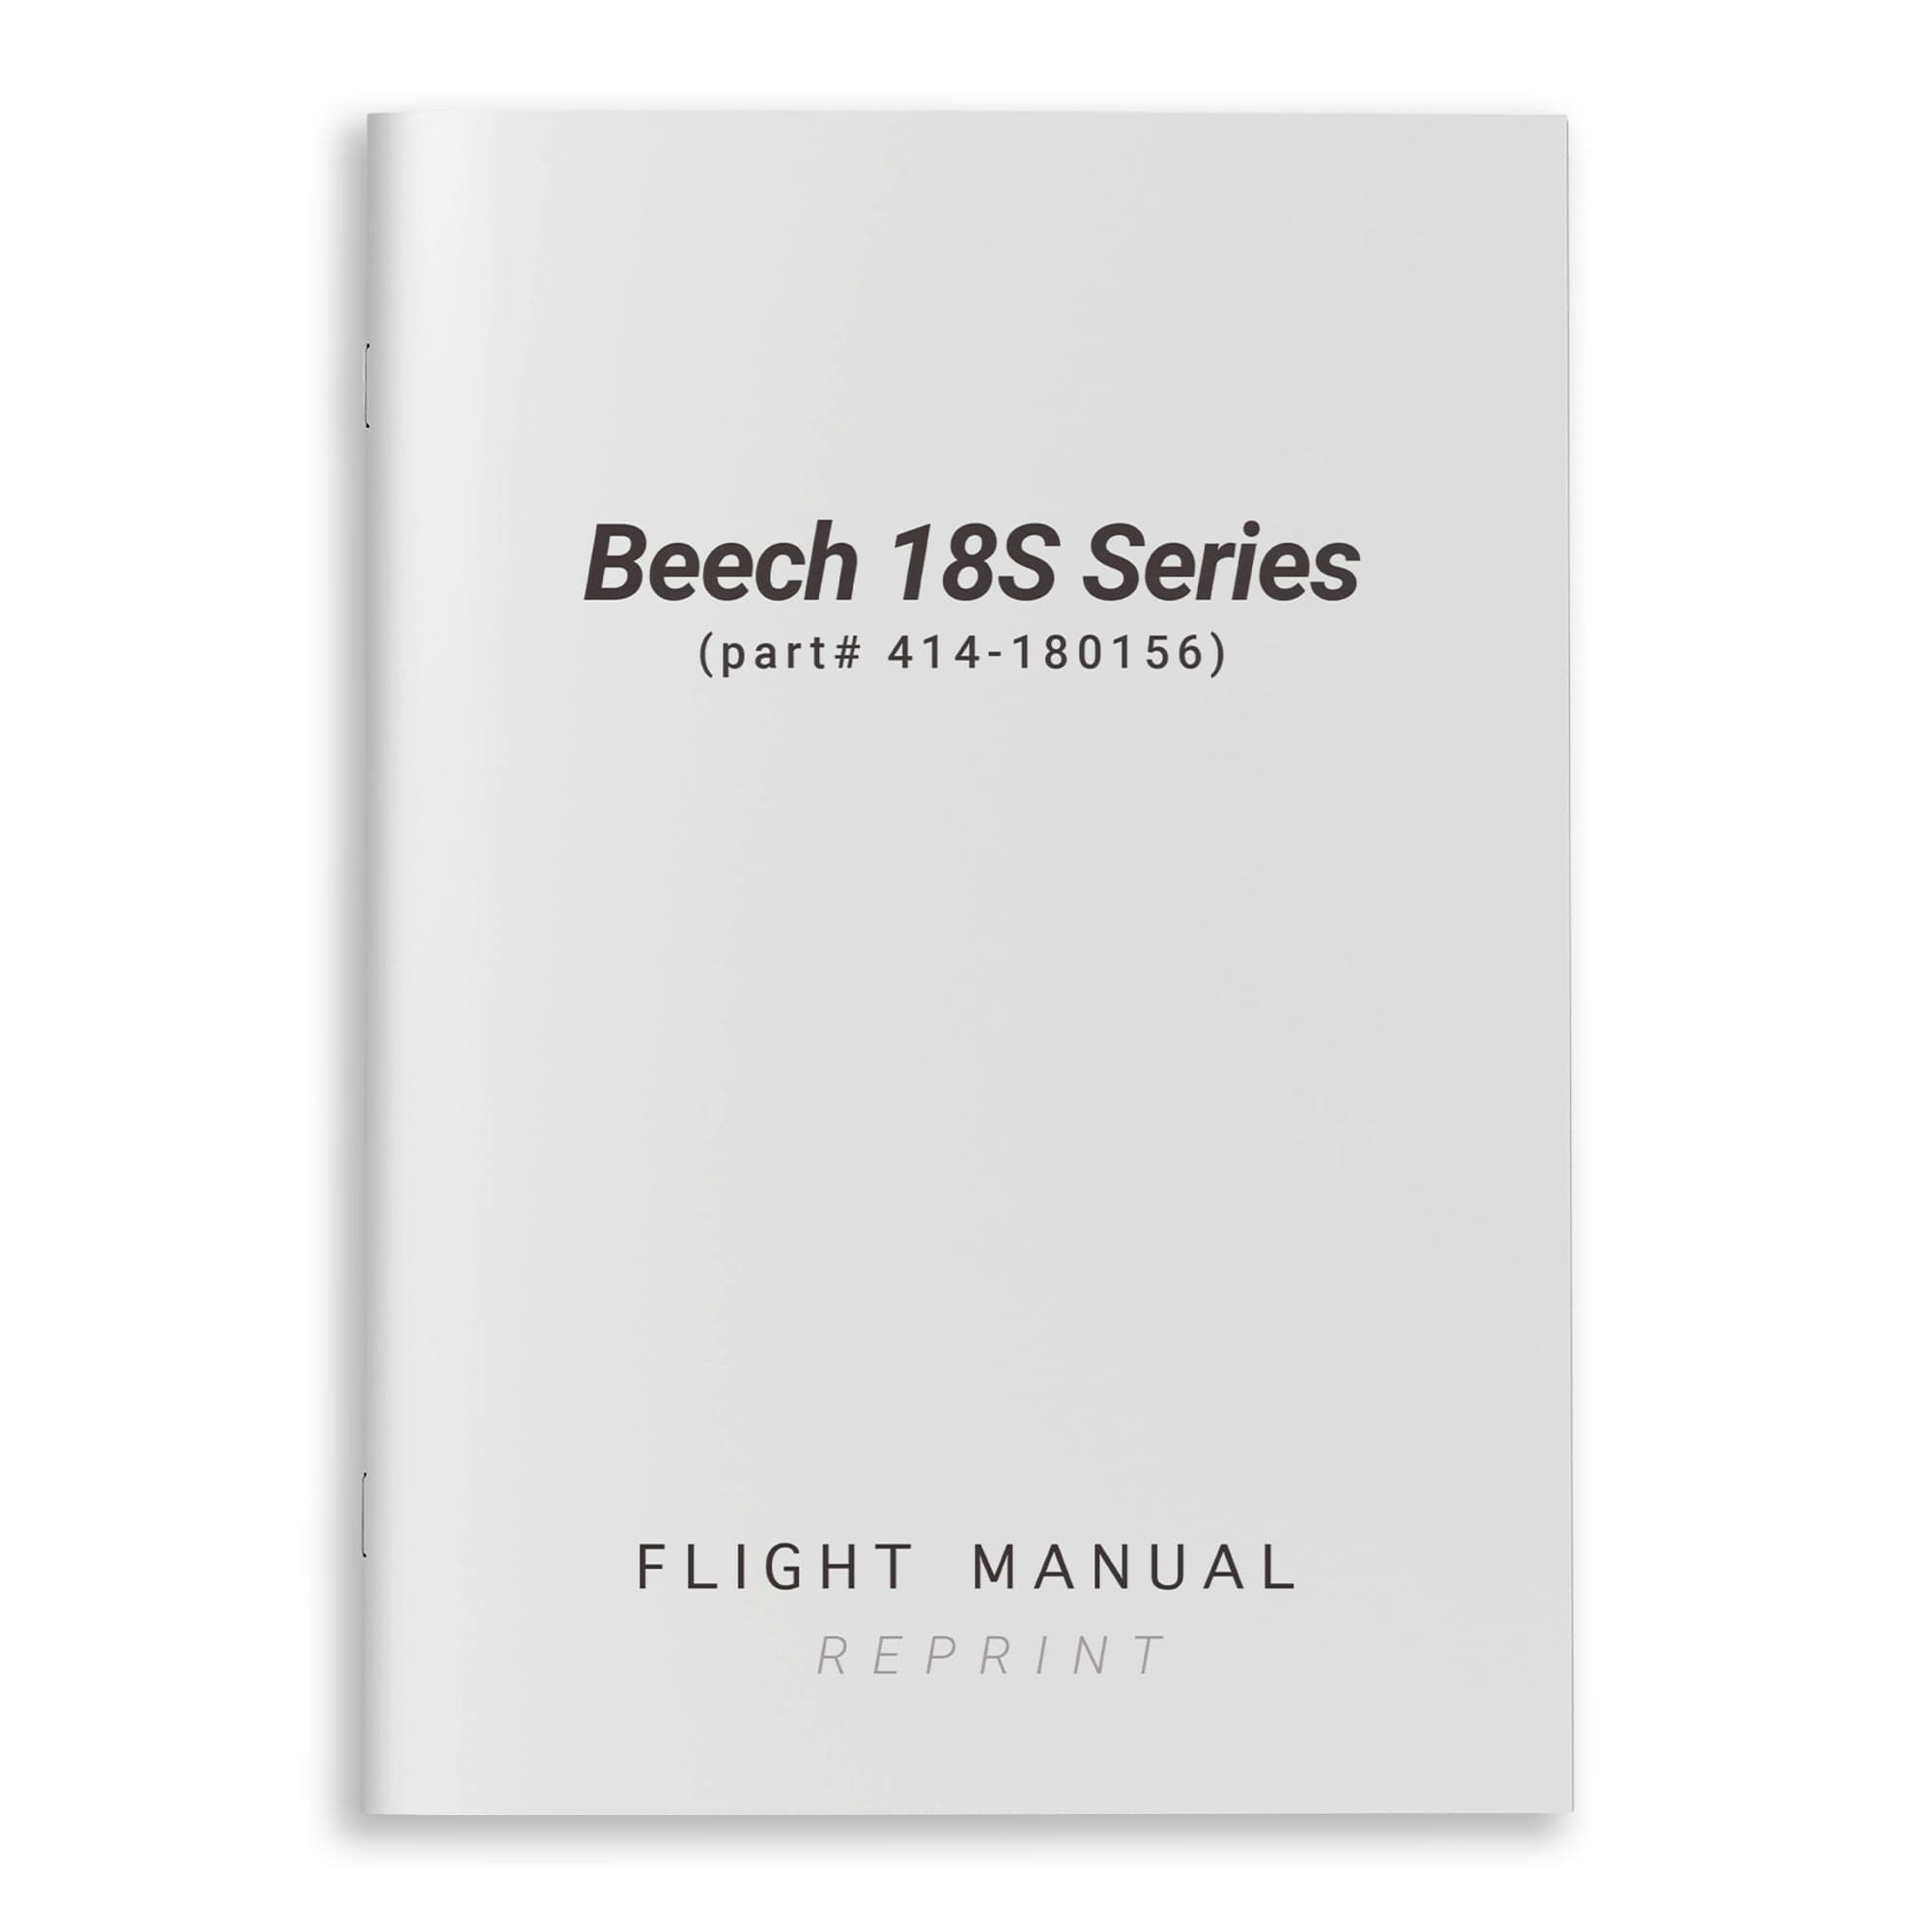 Beech 18S Series Flight Manual (part# 414-180156)